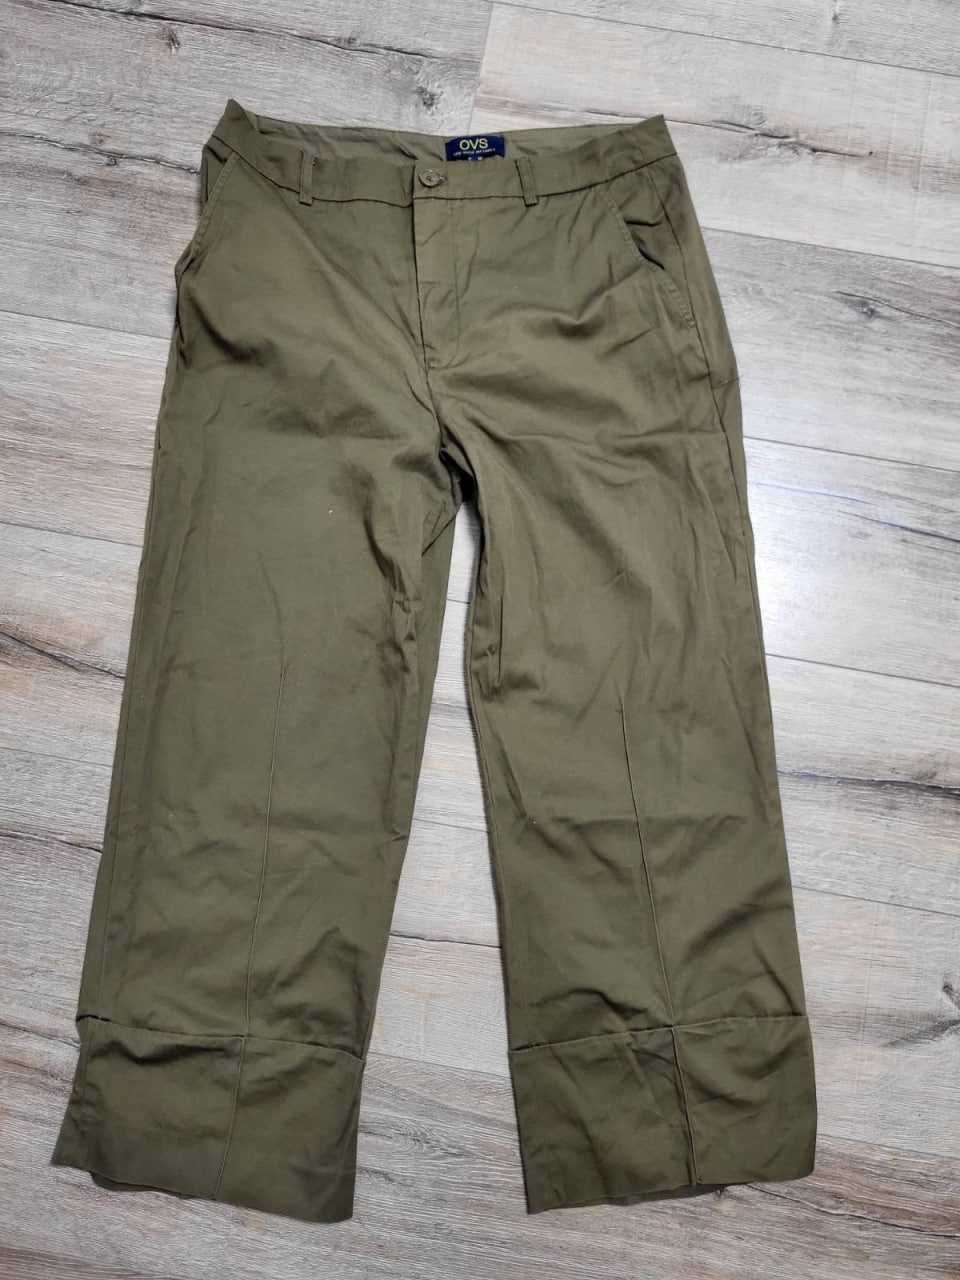 Брюки, штаны  OVS защиные  котон  укороченные брюки с манжетами Италия